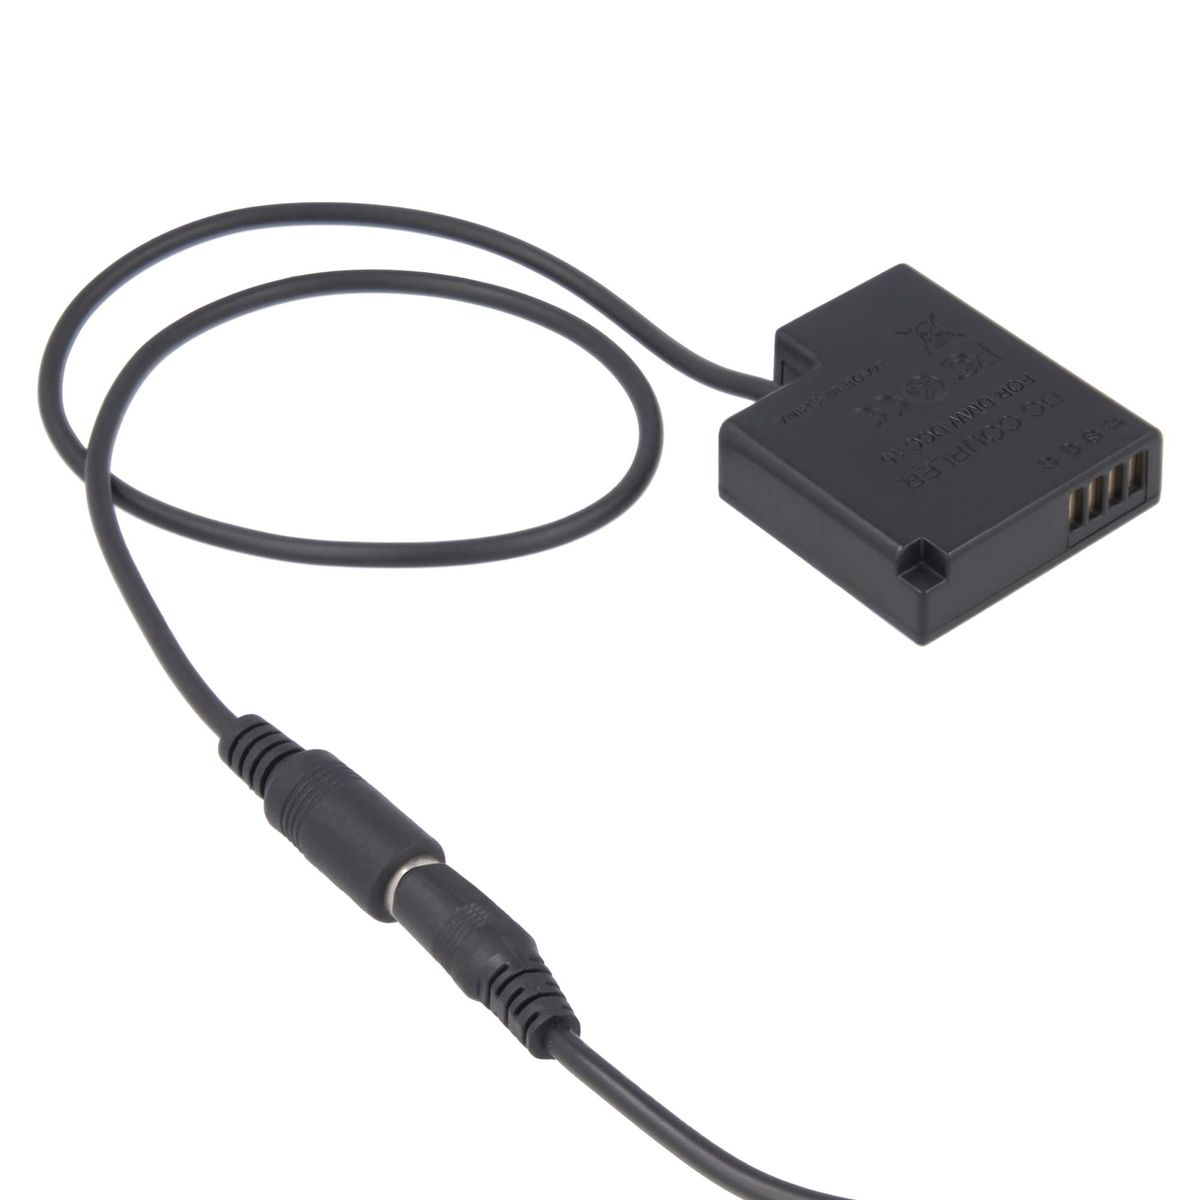 AKKU-KING USB Adapter + Kuppler Panasonic keine DCC15 Ladegerät mit Panasonic, kompatibel Angabe